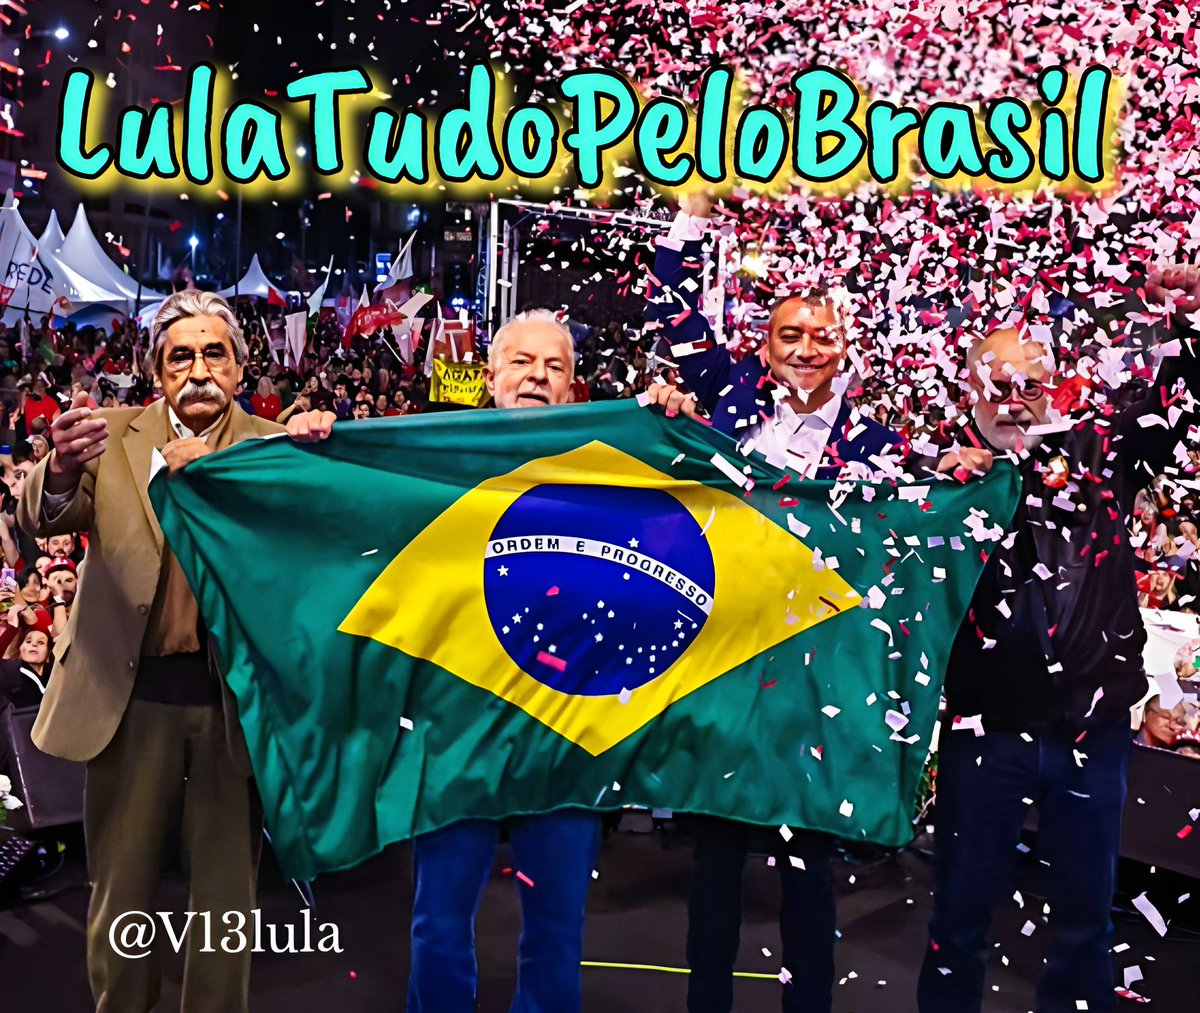 Bom dia Boa quinta feira pra todos nós amém Deus abençoe sempre 🙏 🙏 🙏 @LulaOficial @V13lula Democracia sempre Faz o L #LulaTudoPeloBrasil #MML